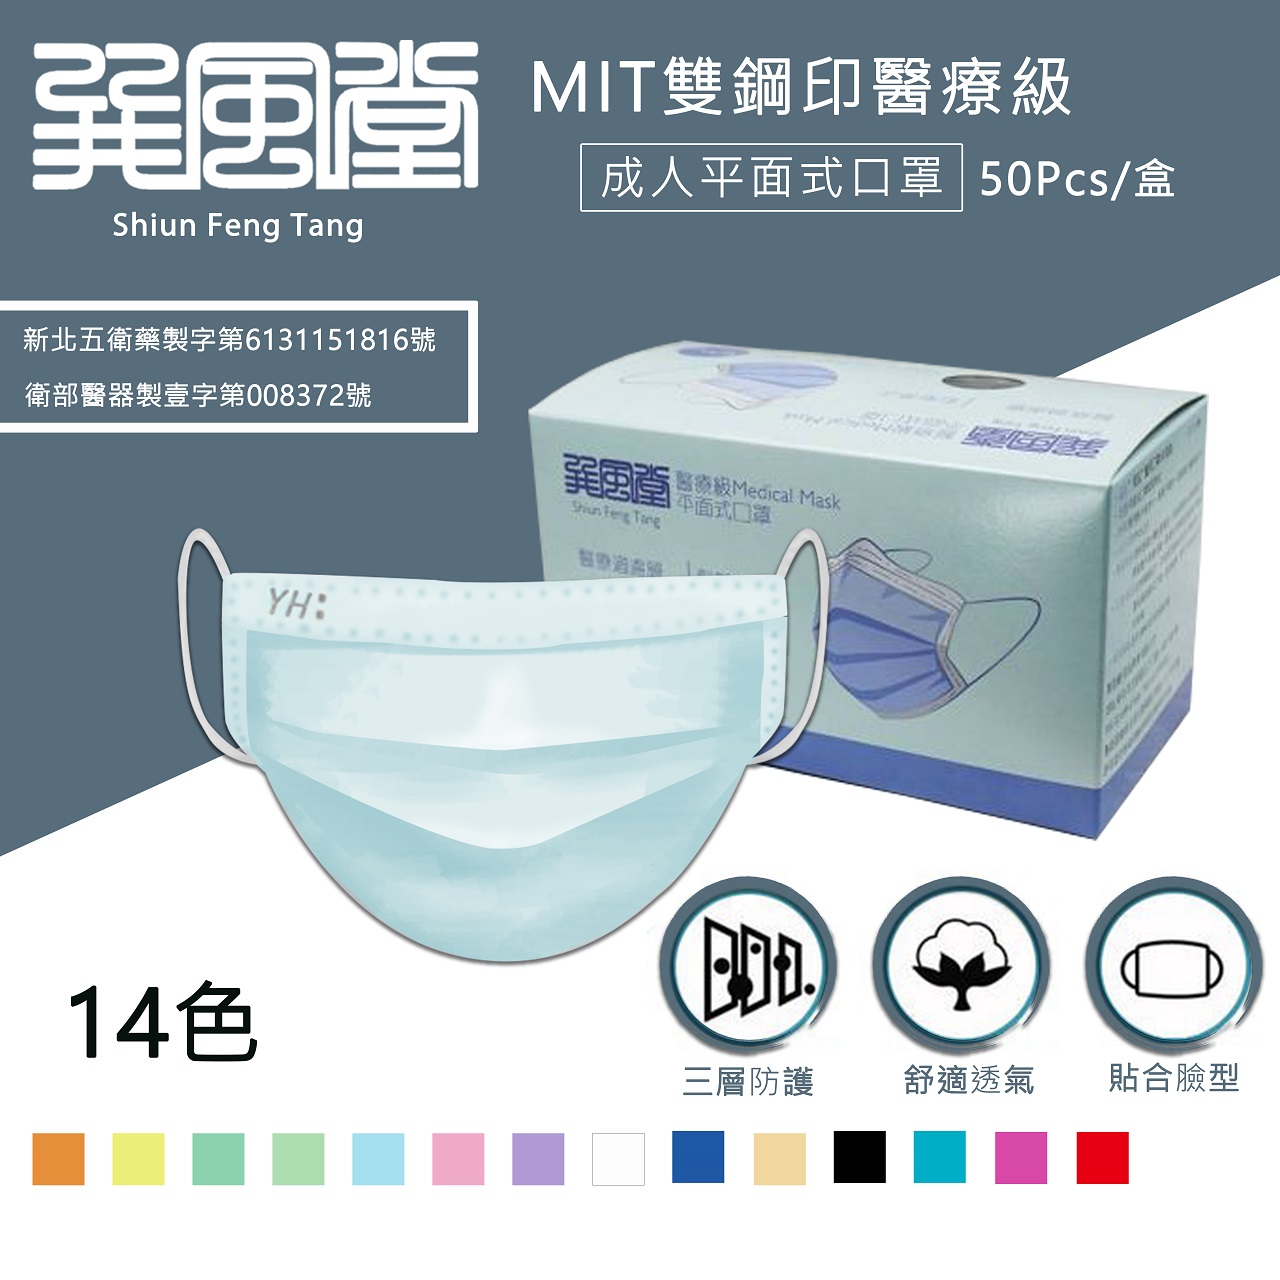 【巽風堂】台灣製國家隊醫療口罩(50片/盒) 成人/兒童